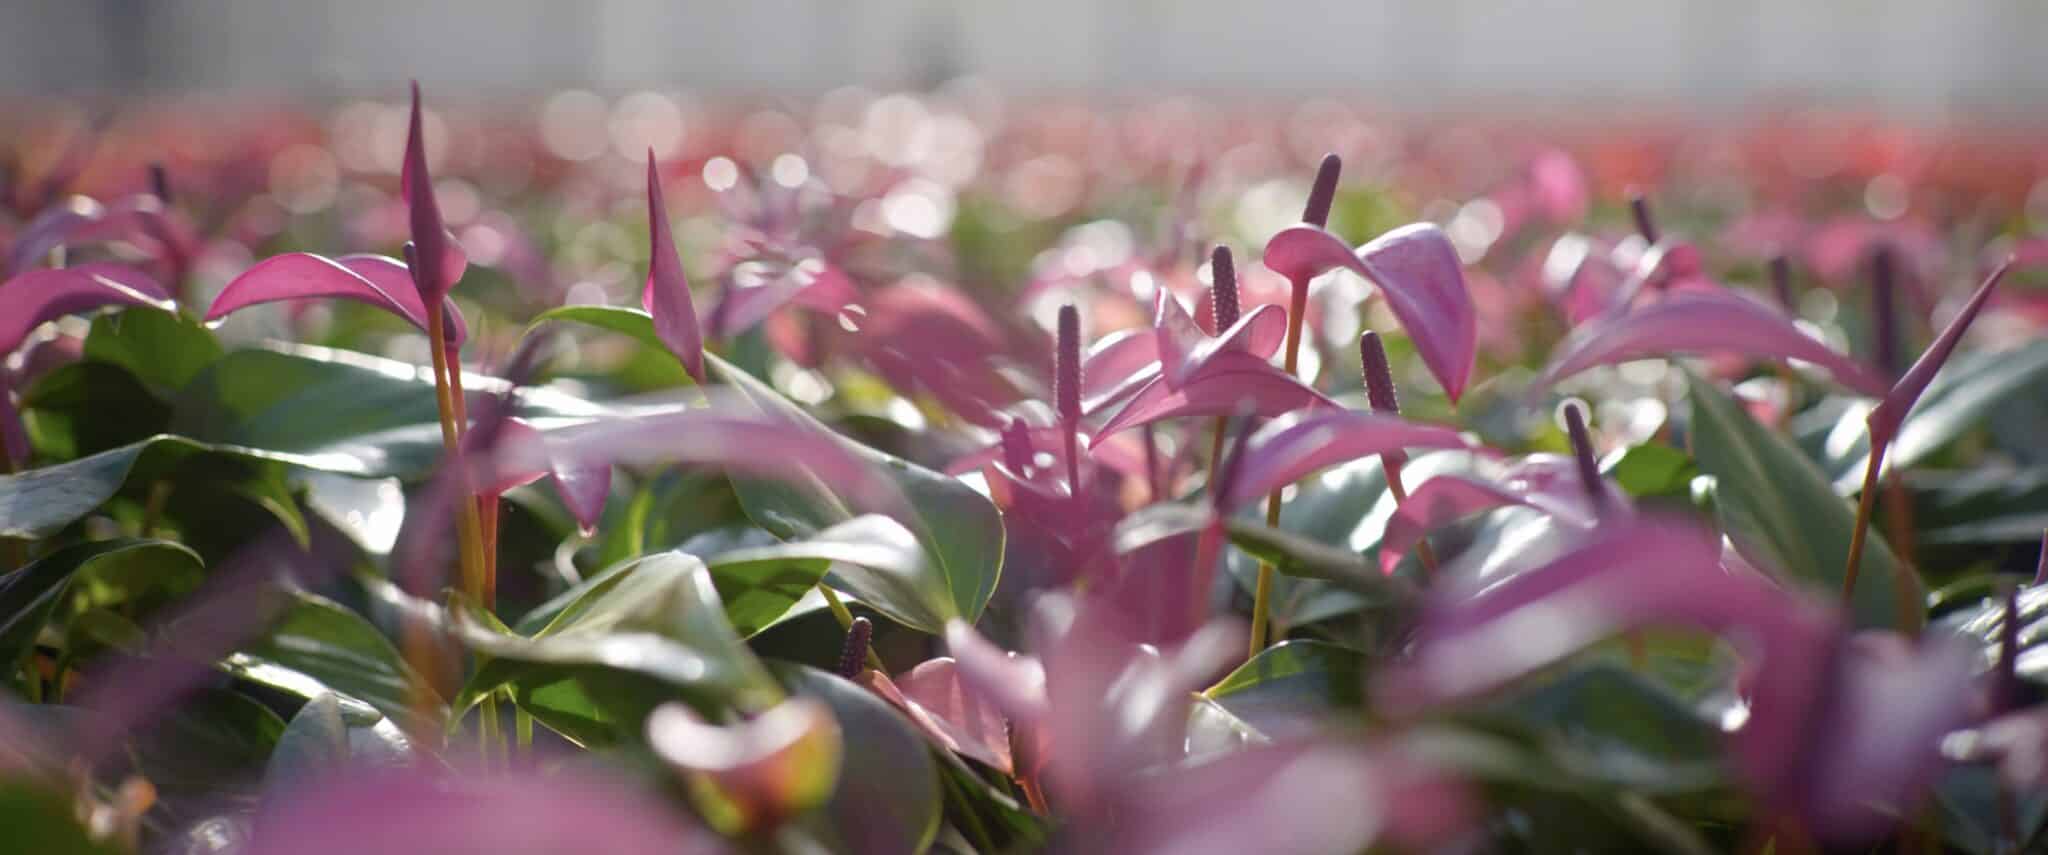 Stolk Brothers anthurium pink in field